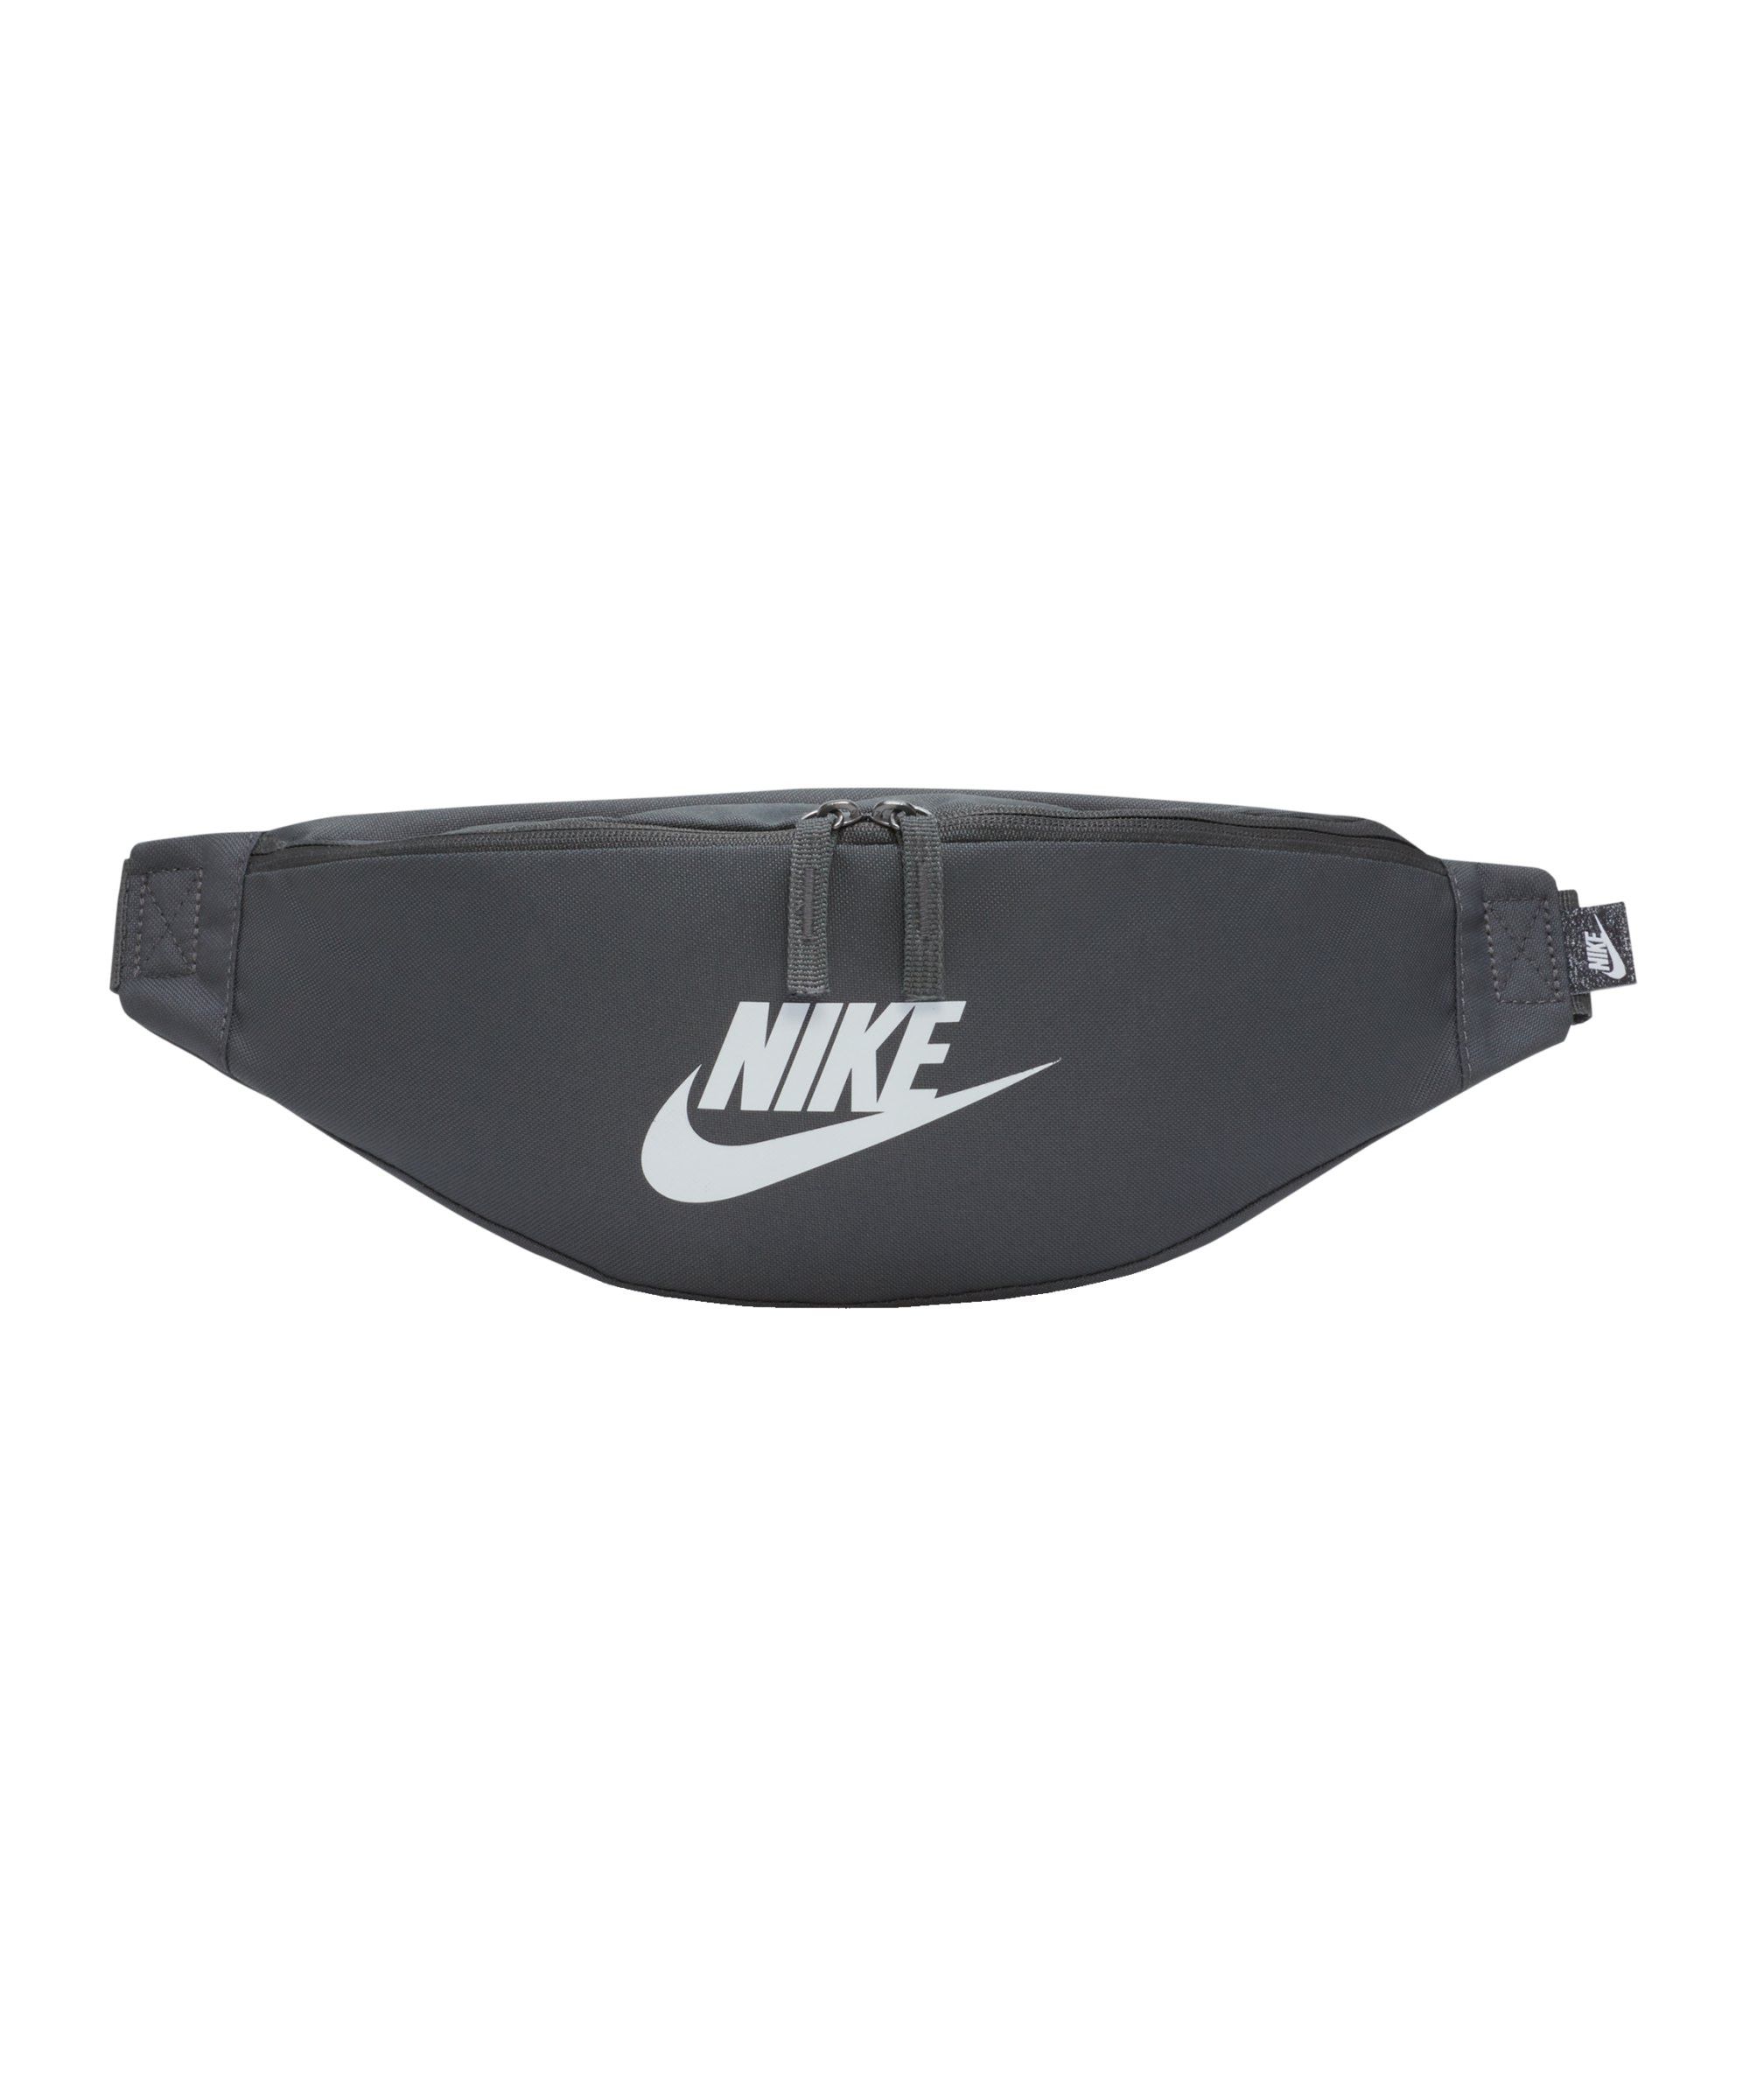 Nike Heritage Hüfttasche Grau Schwarz F068 - grau